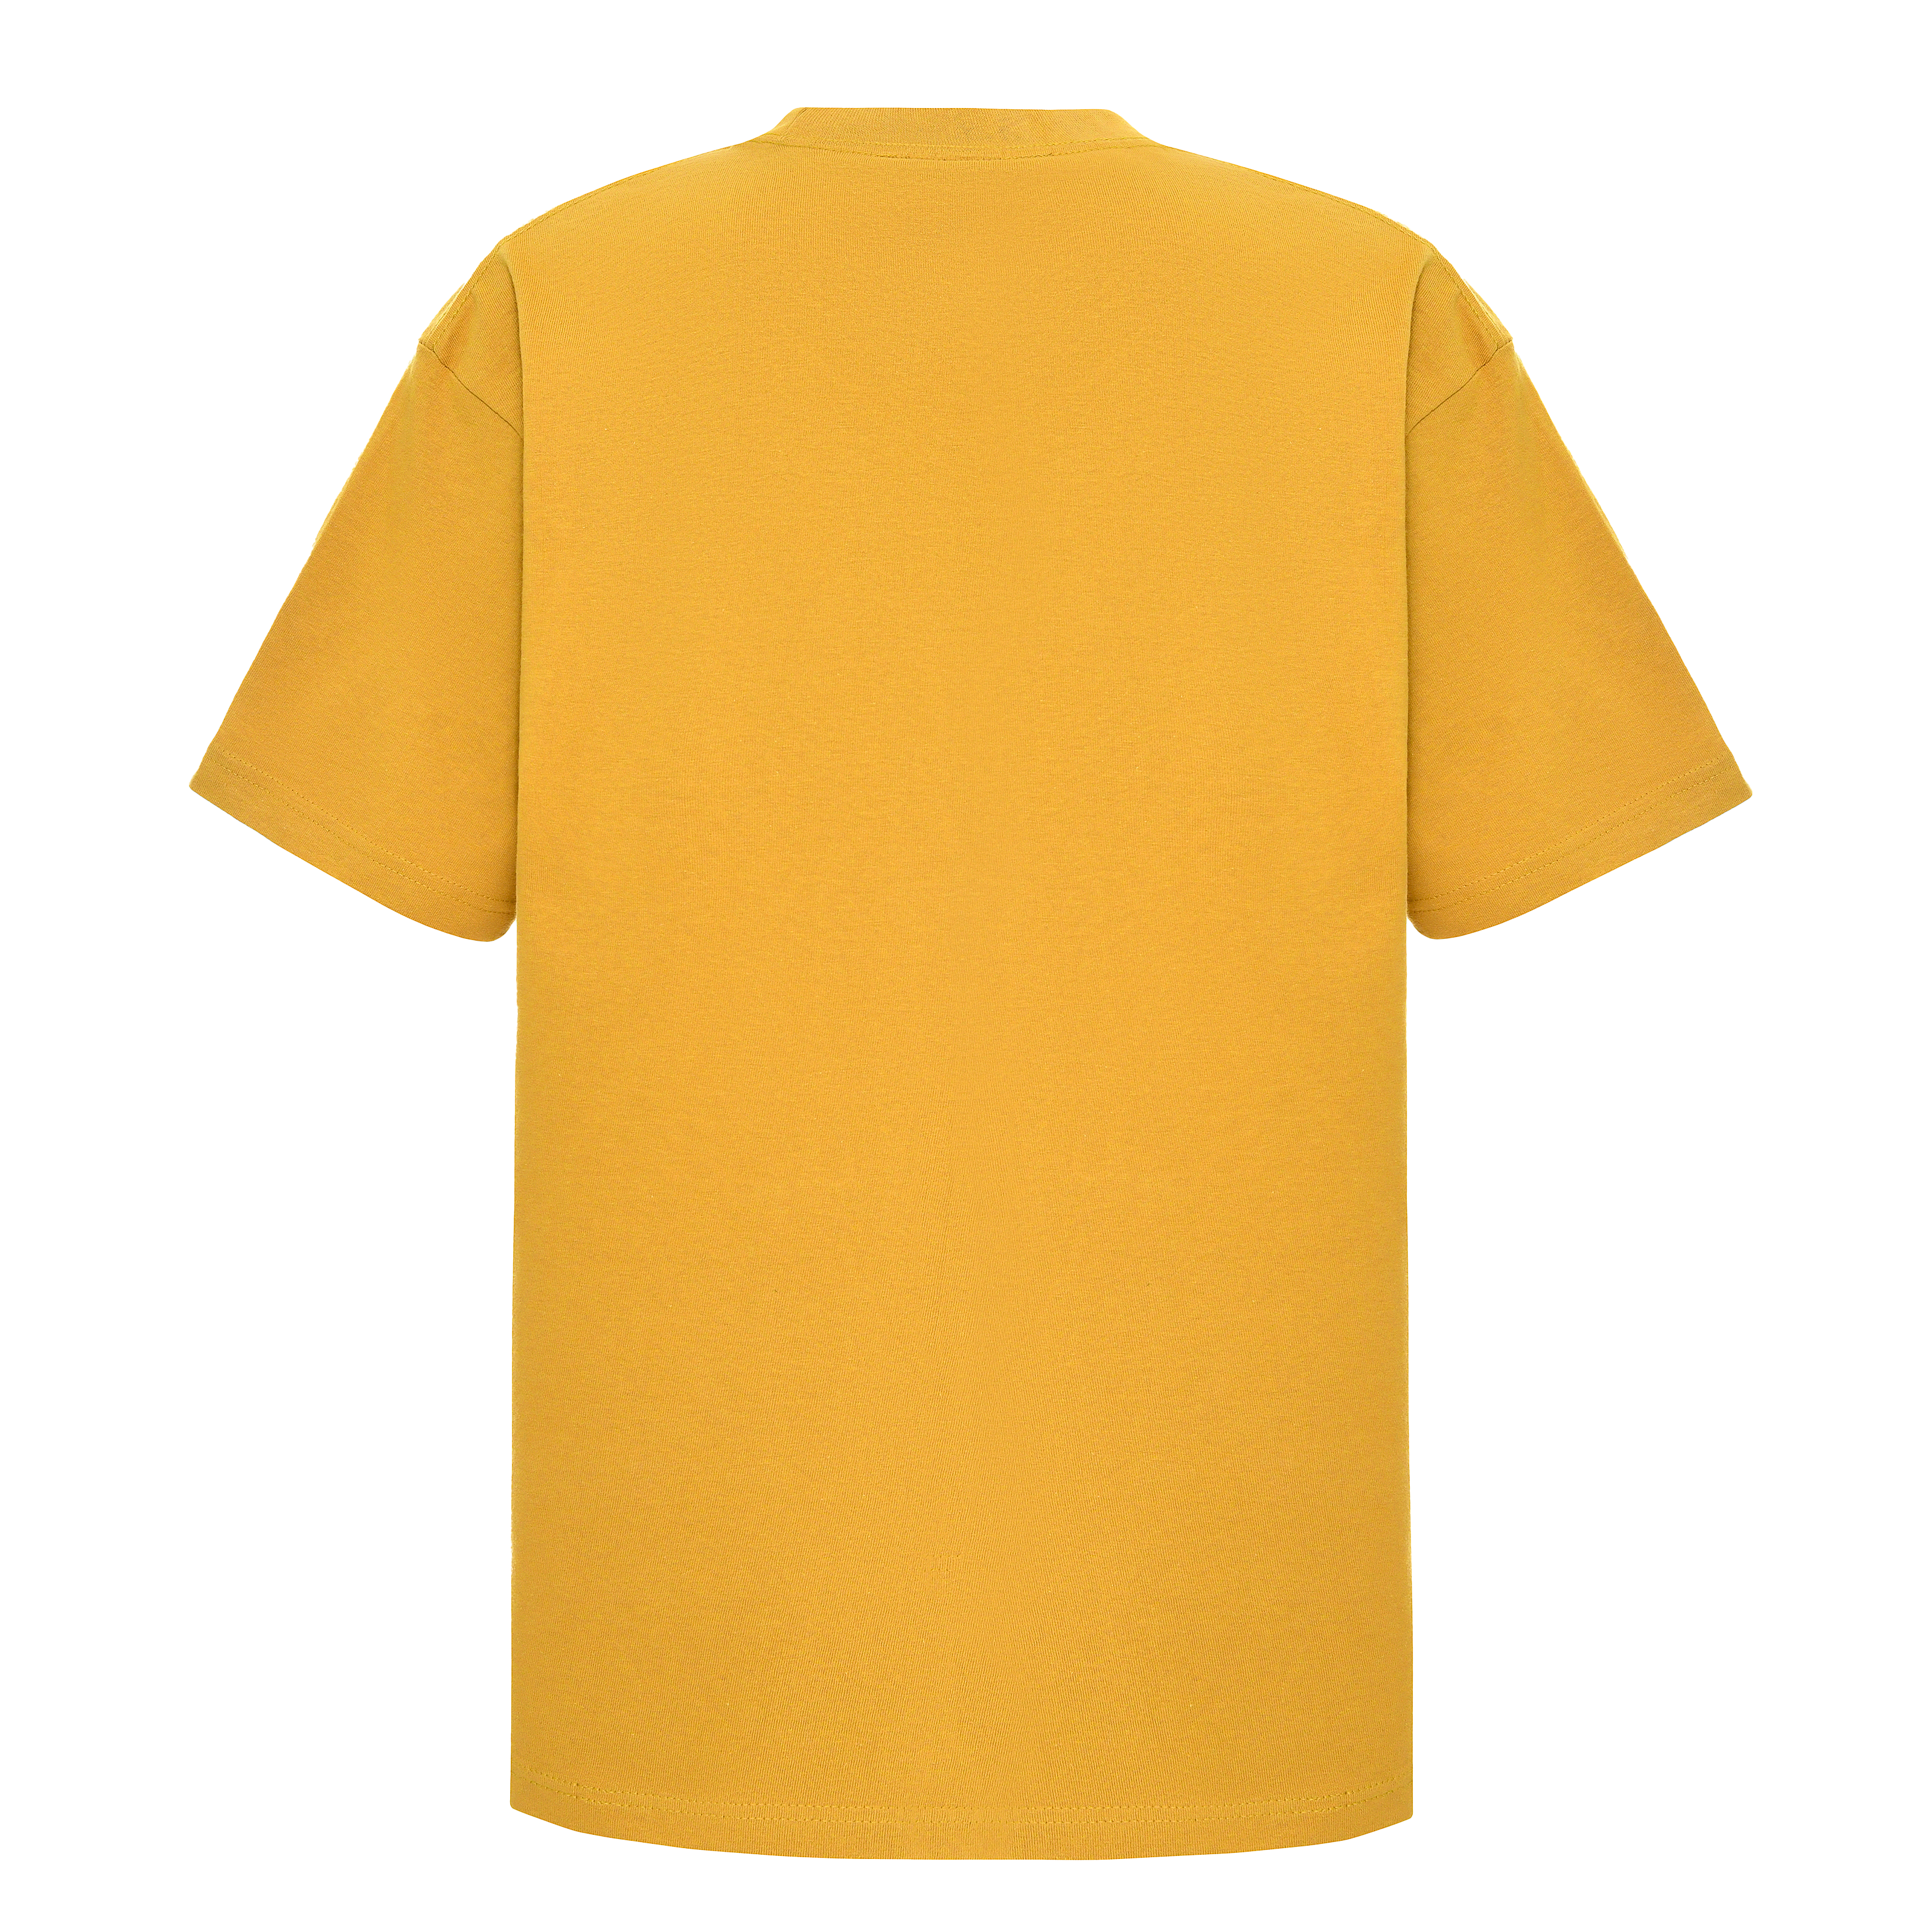 Garment Dye T-Shirt - Standard Size - Mustard